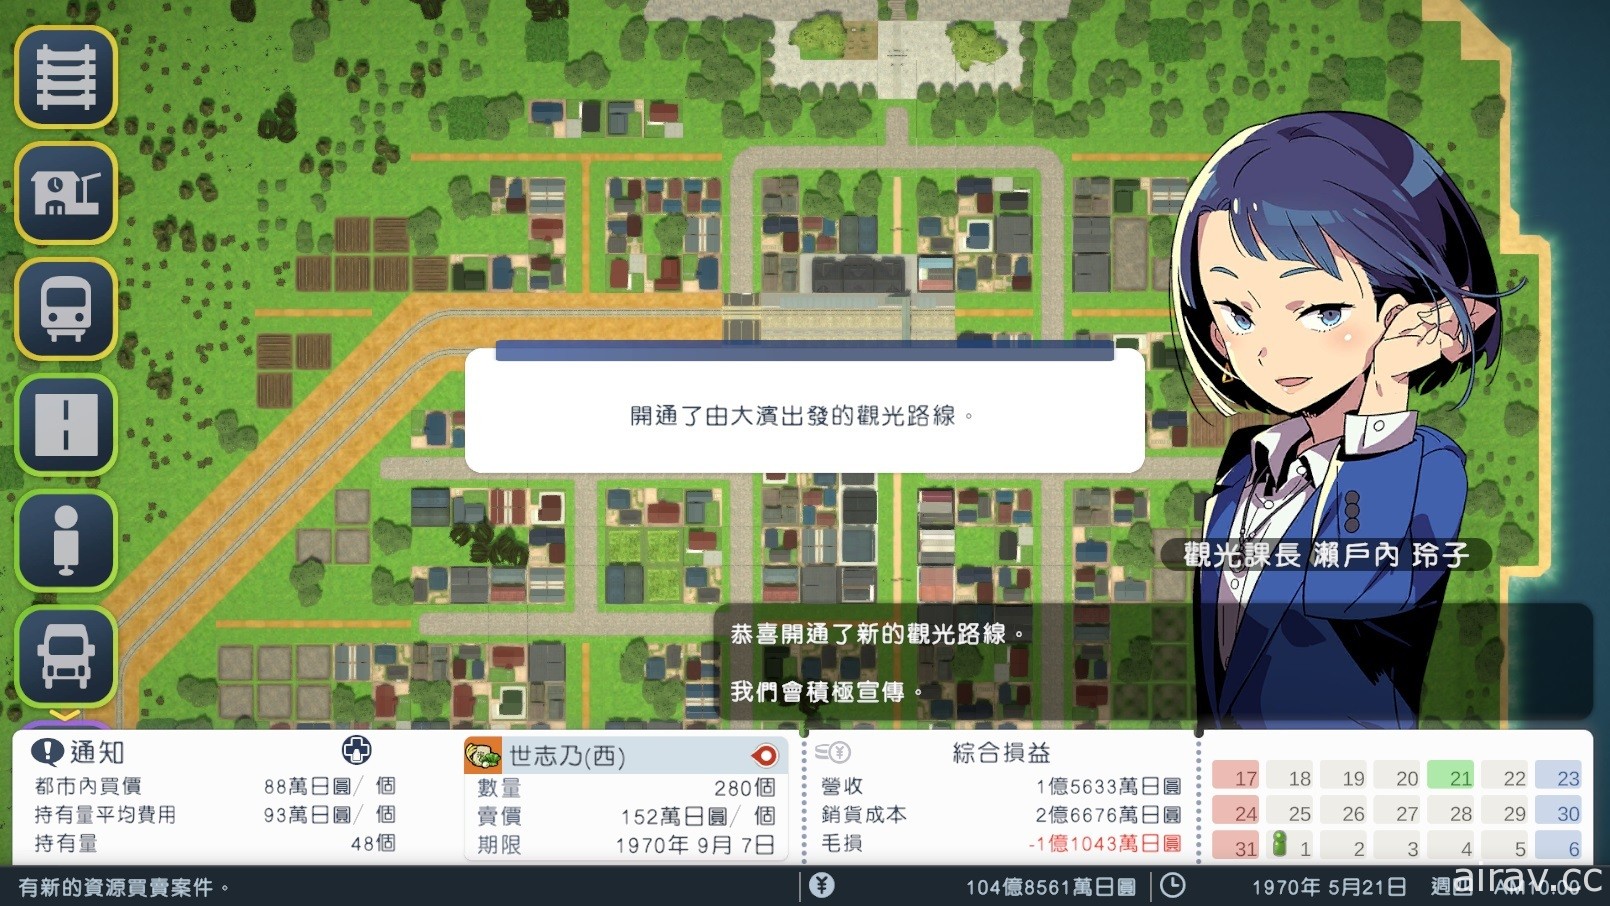 老牌都市开发铁路模拟游戏《A 列车 开始吧 观光开发计画》确定 12 月推出 Steam 版